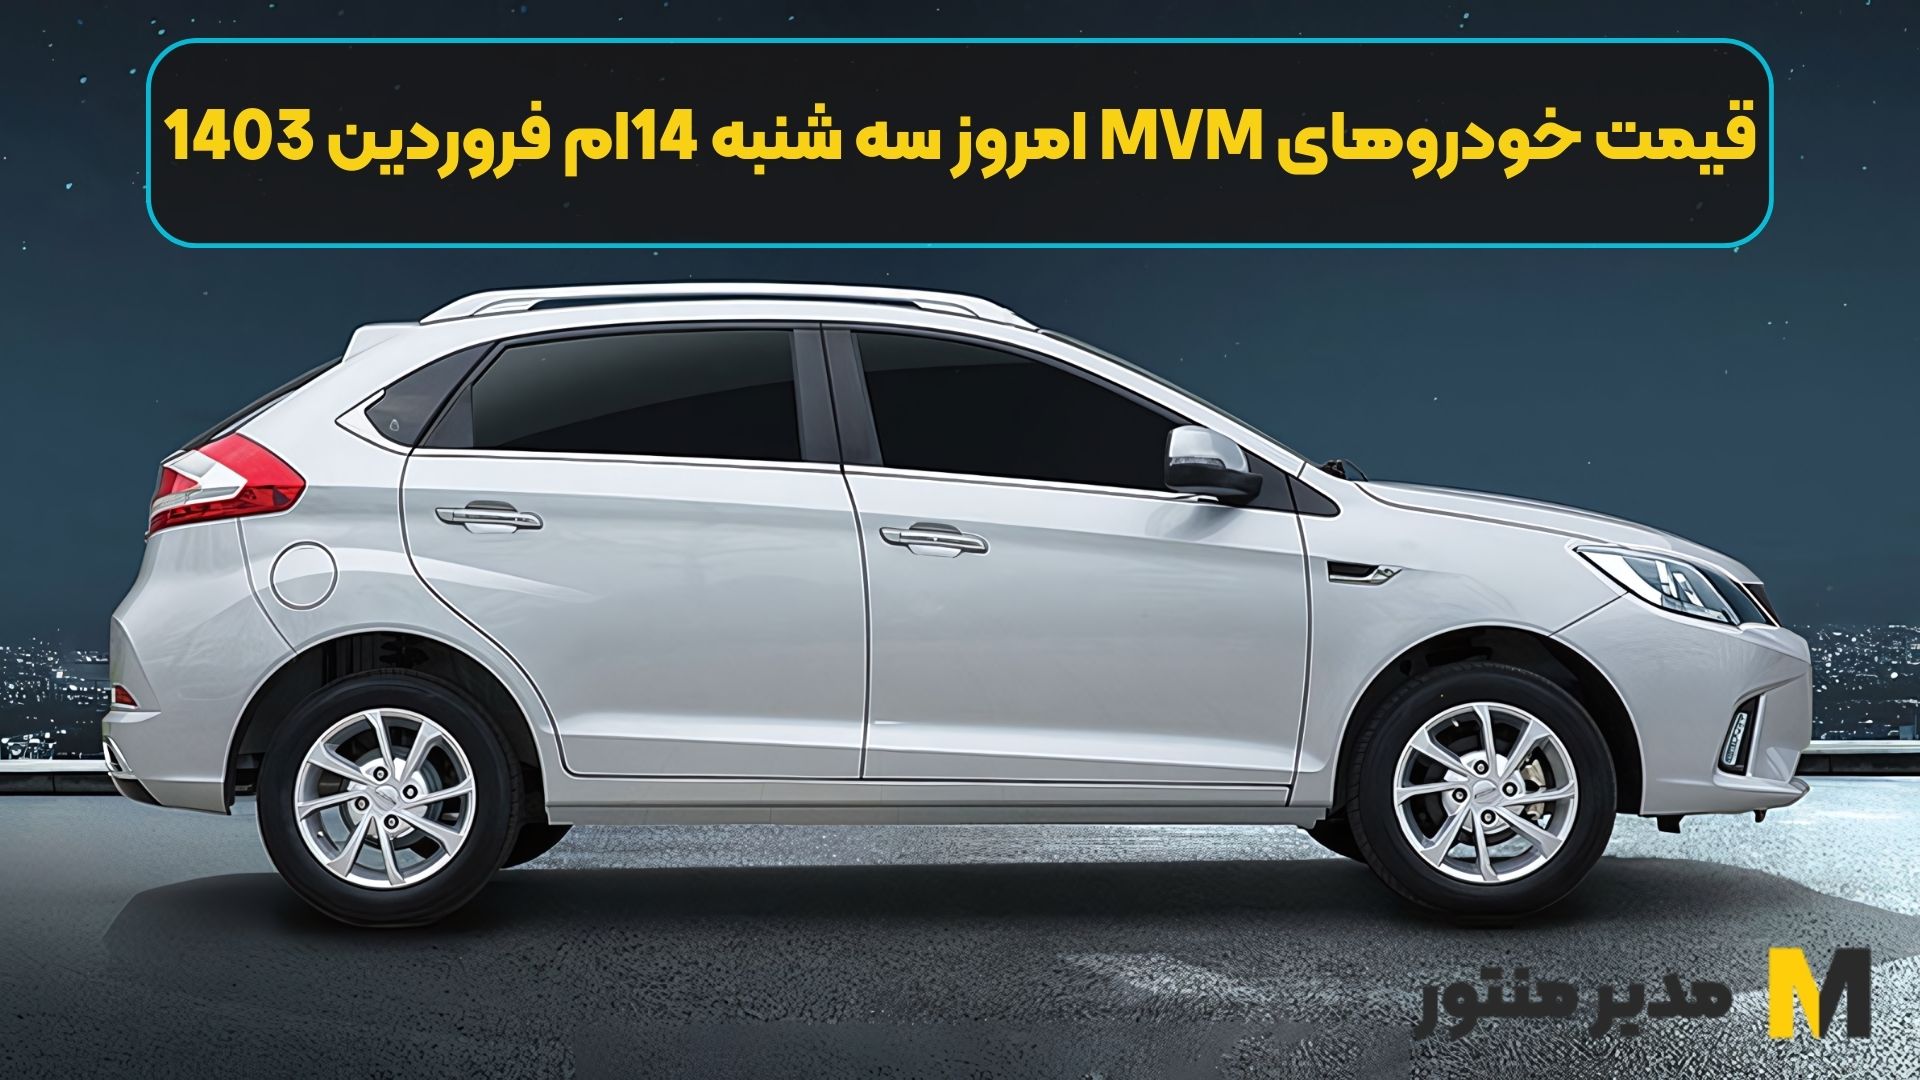 قیمت خودروهای MVM امروز سه شنبه 14ام فروردین 1403